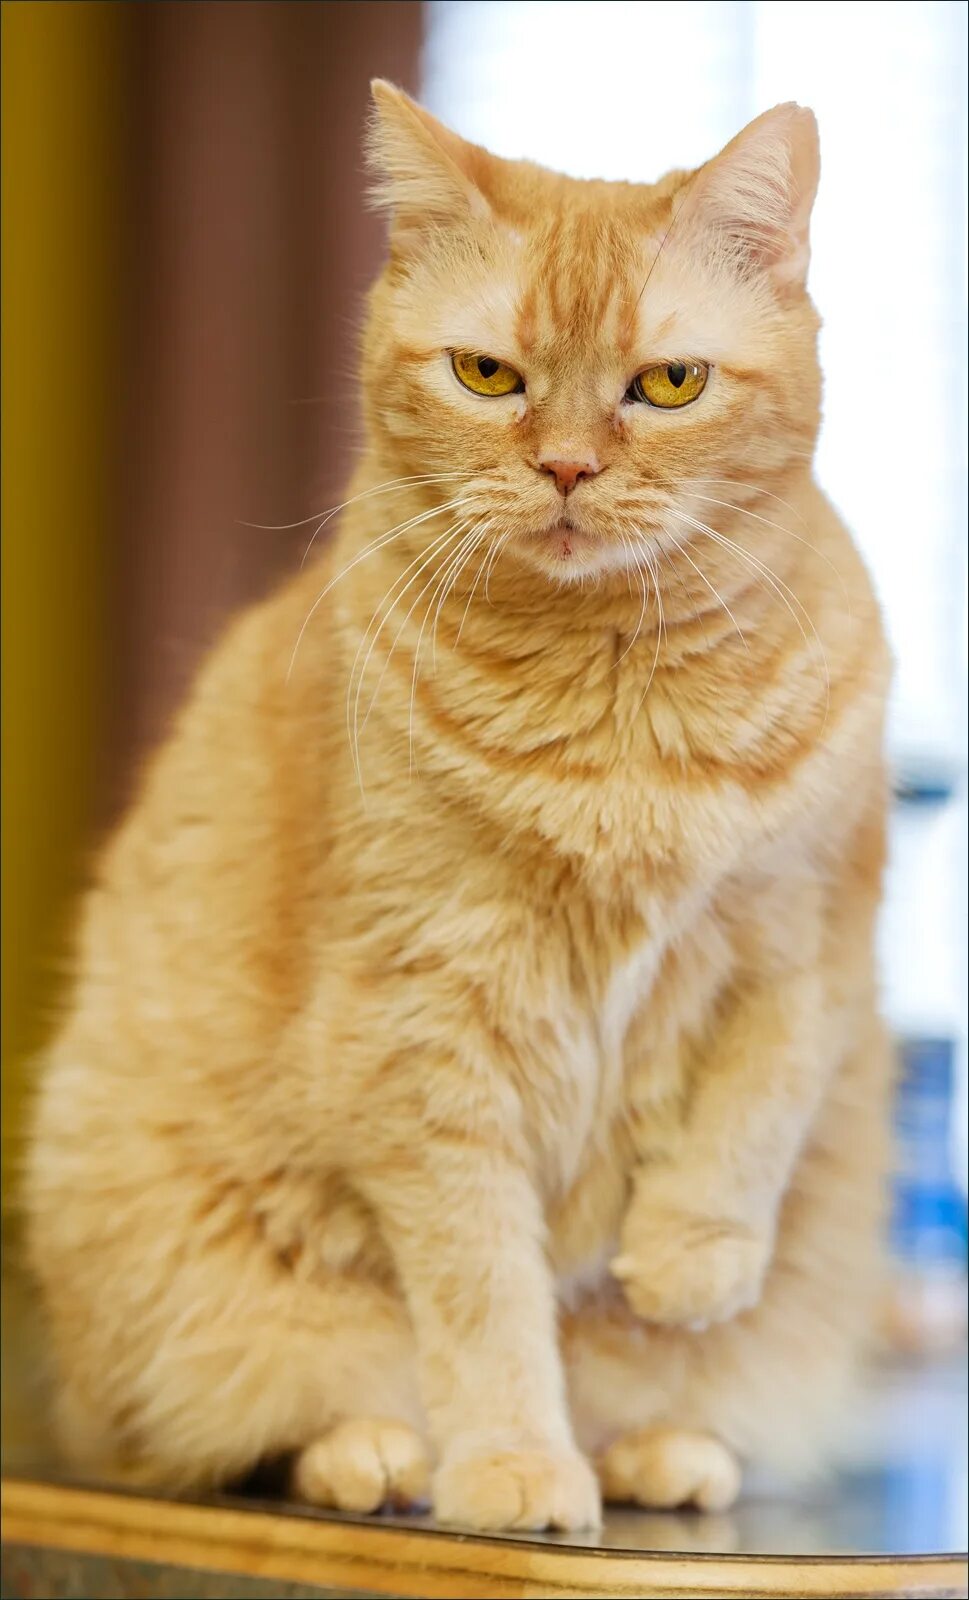 Европейская короткошерстная кошка рыжая. Европейская короткошерстная табби рыжий. Скоттиш страйт рыжий. Европейский короткошерстный кот рыжий. Кошечка желтая